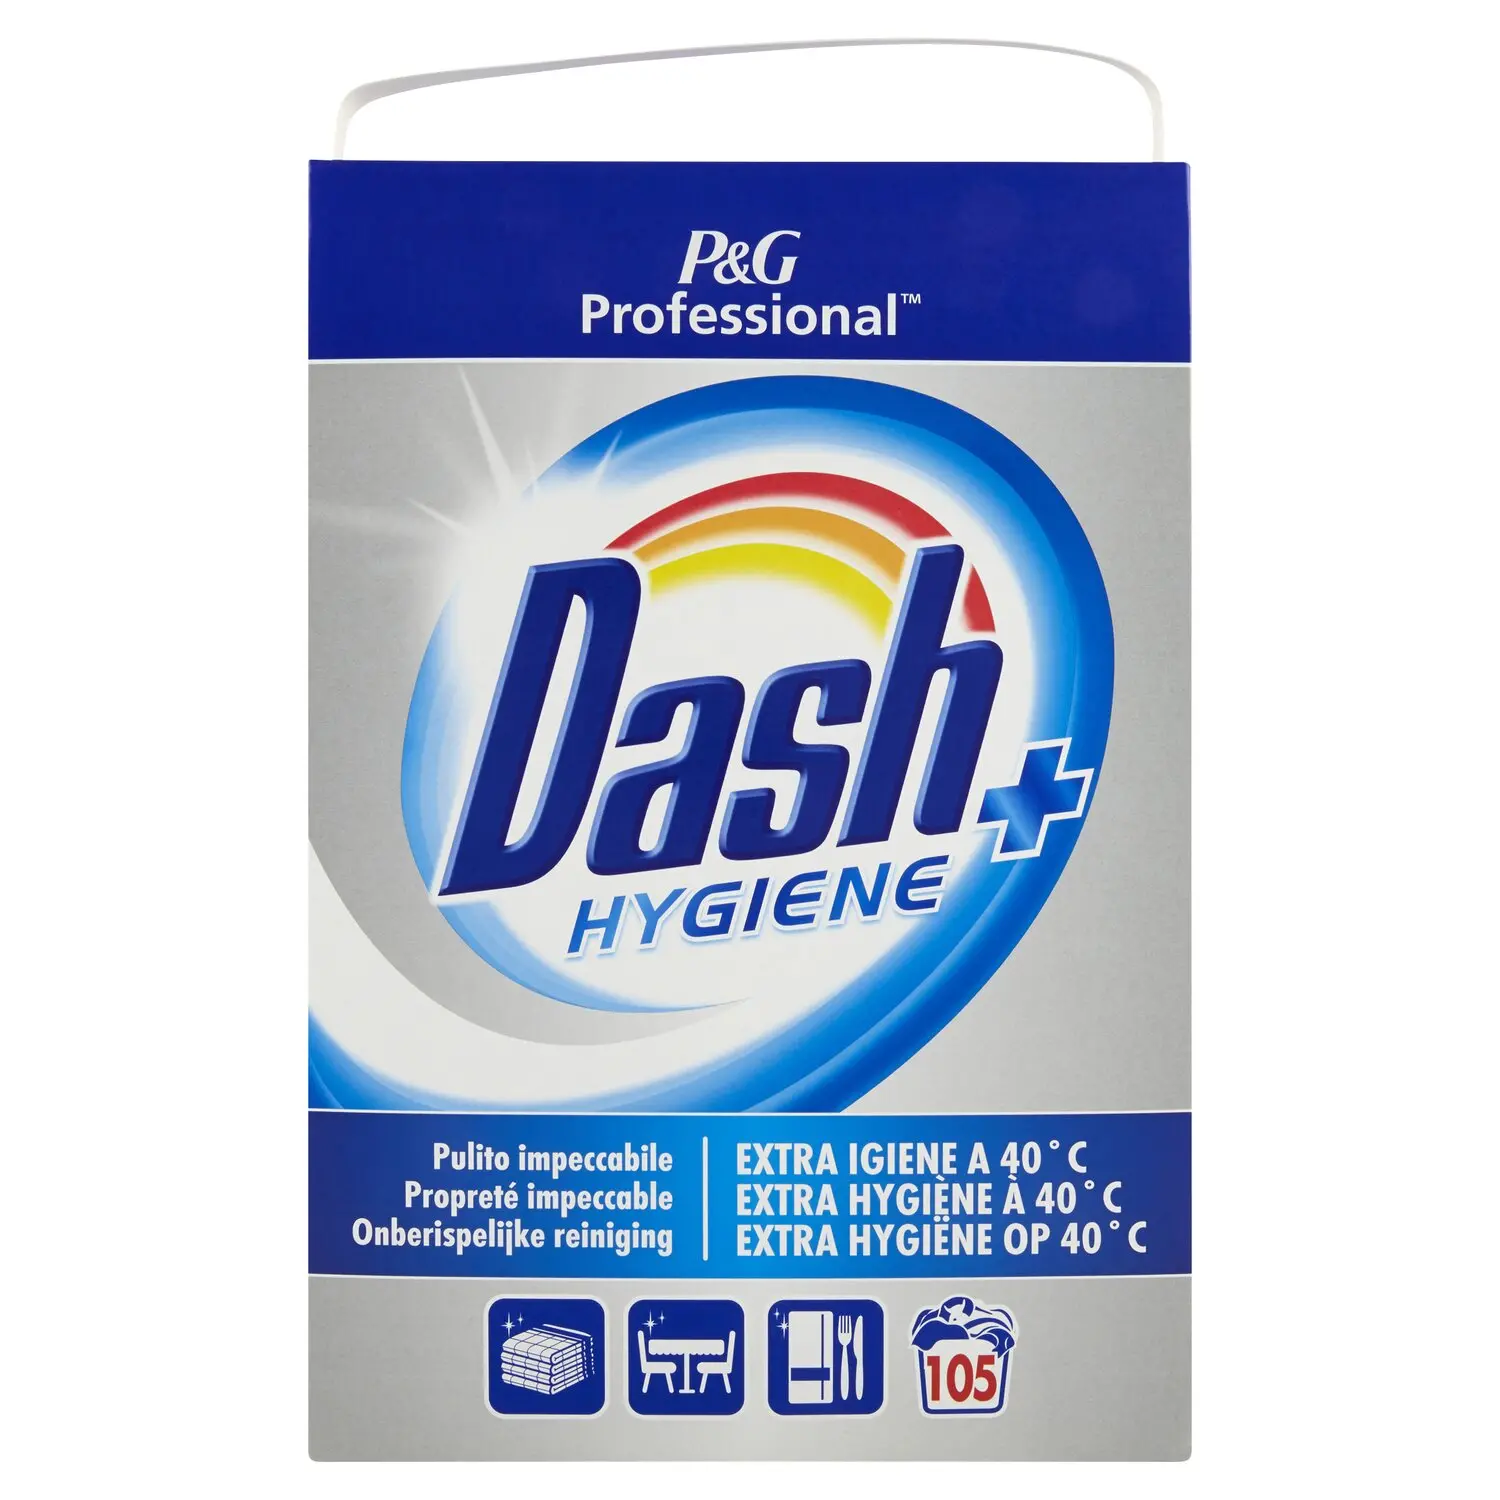 Dash Professional Hygiene Detersivo in Polvere Lavatrice 105